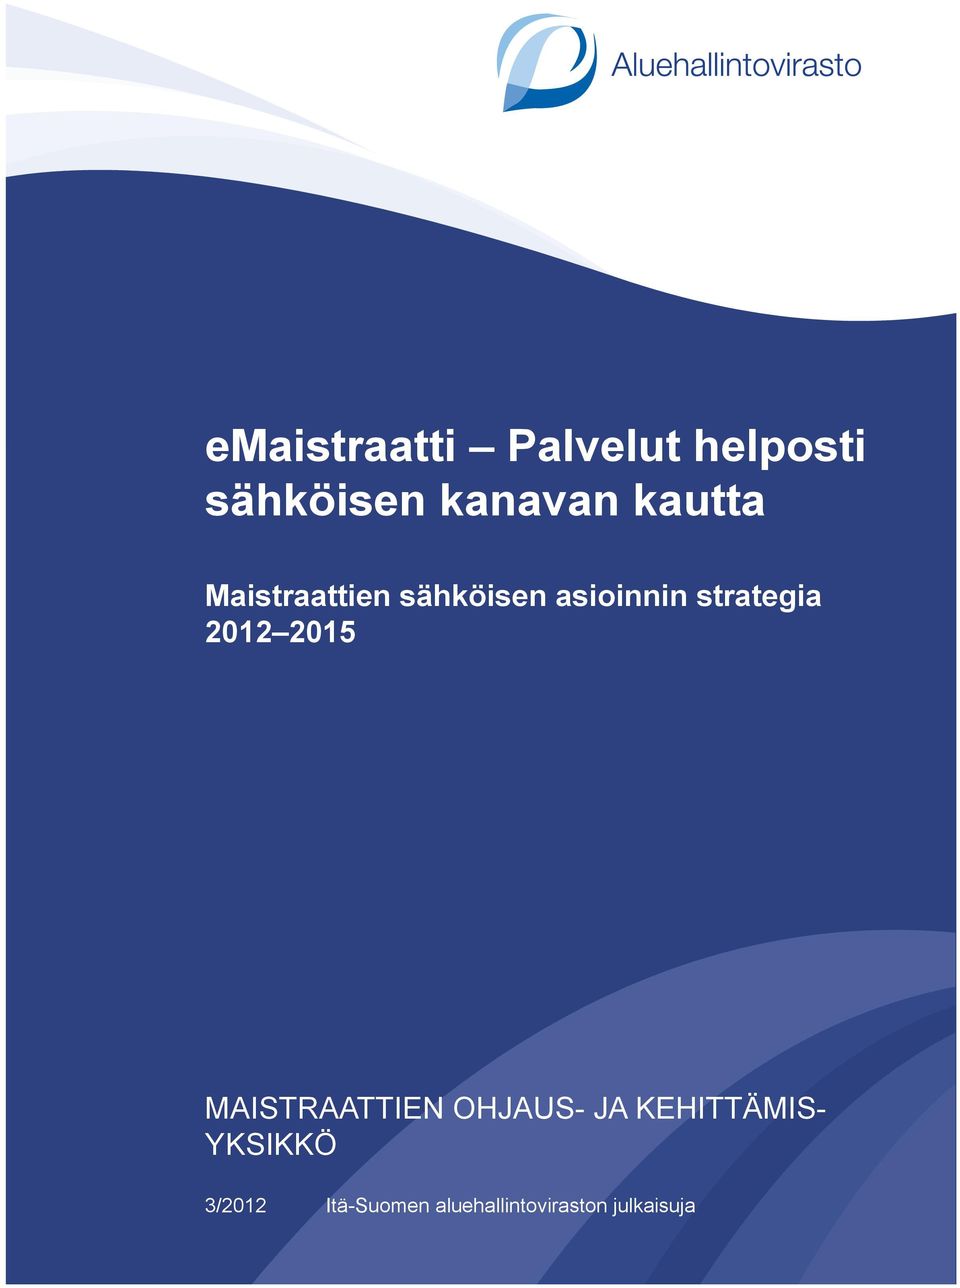 2012 2015 MAISTRAATTIEN OHJAUS- JA KEHITTÄMIS-